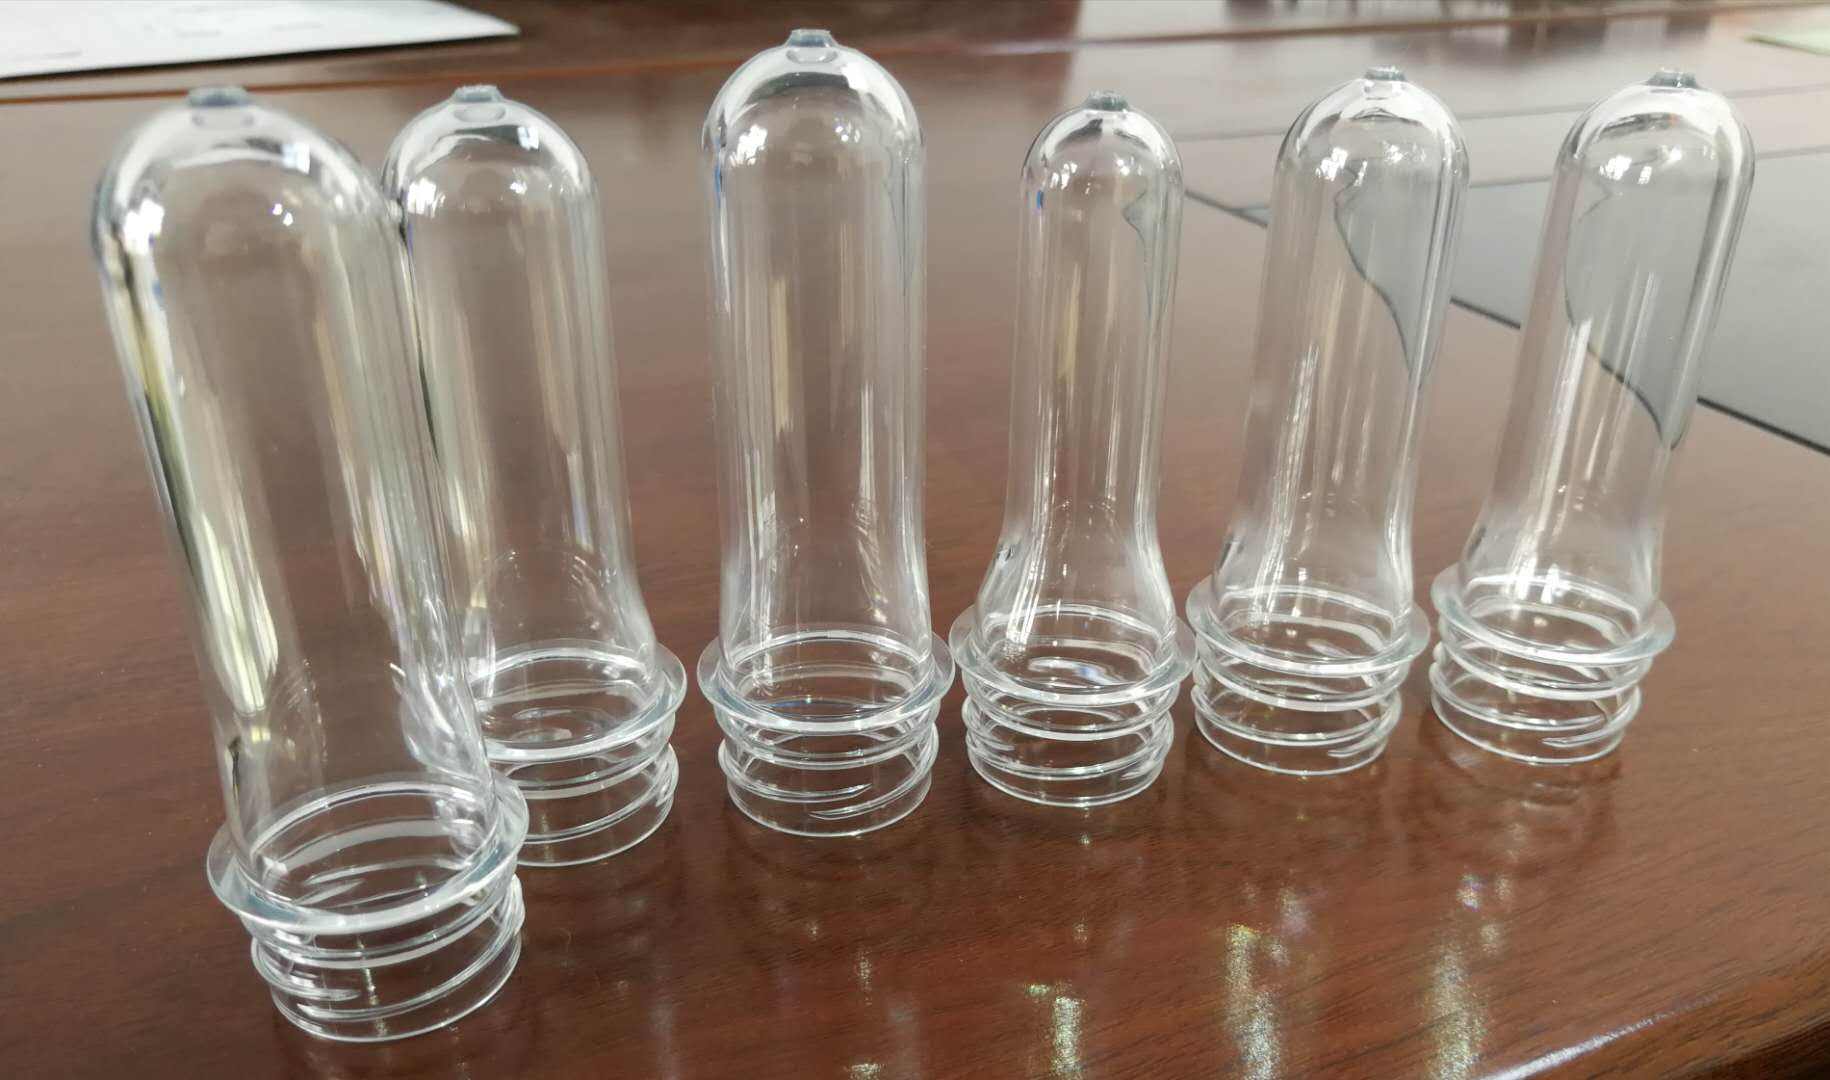 供应PET矿泉水瓶坯25口28口30口38口瓶胚注塑吹塑瓶胚